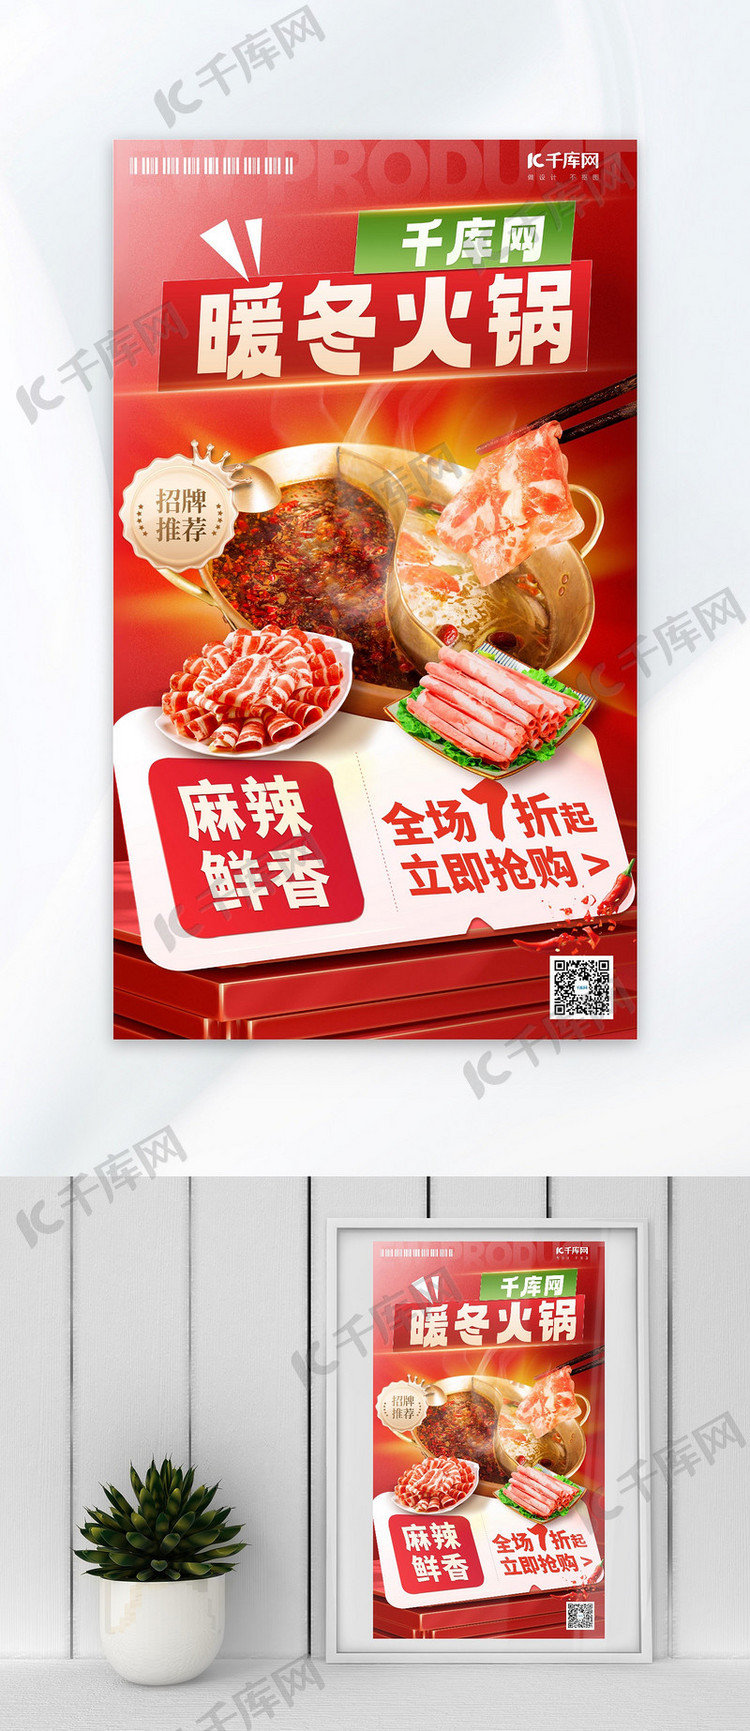 暖冬美食火锅红色简约餐饮广告宣传海报